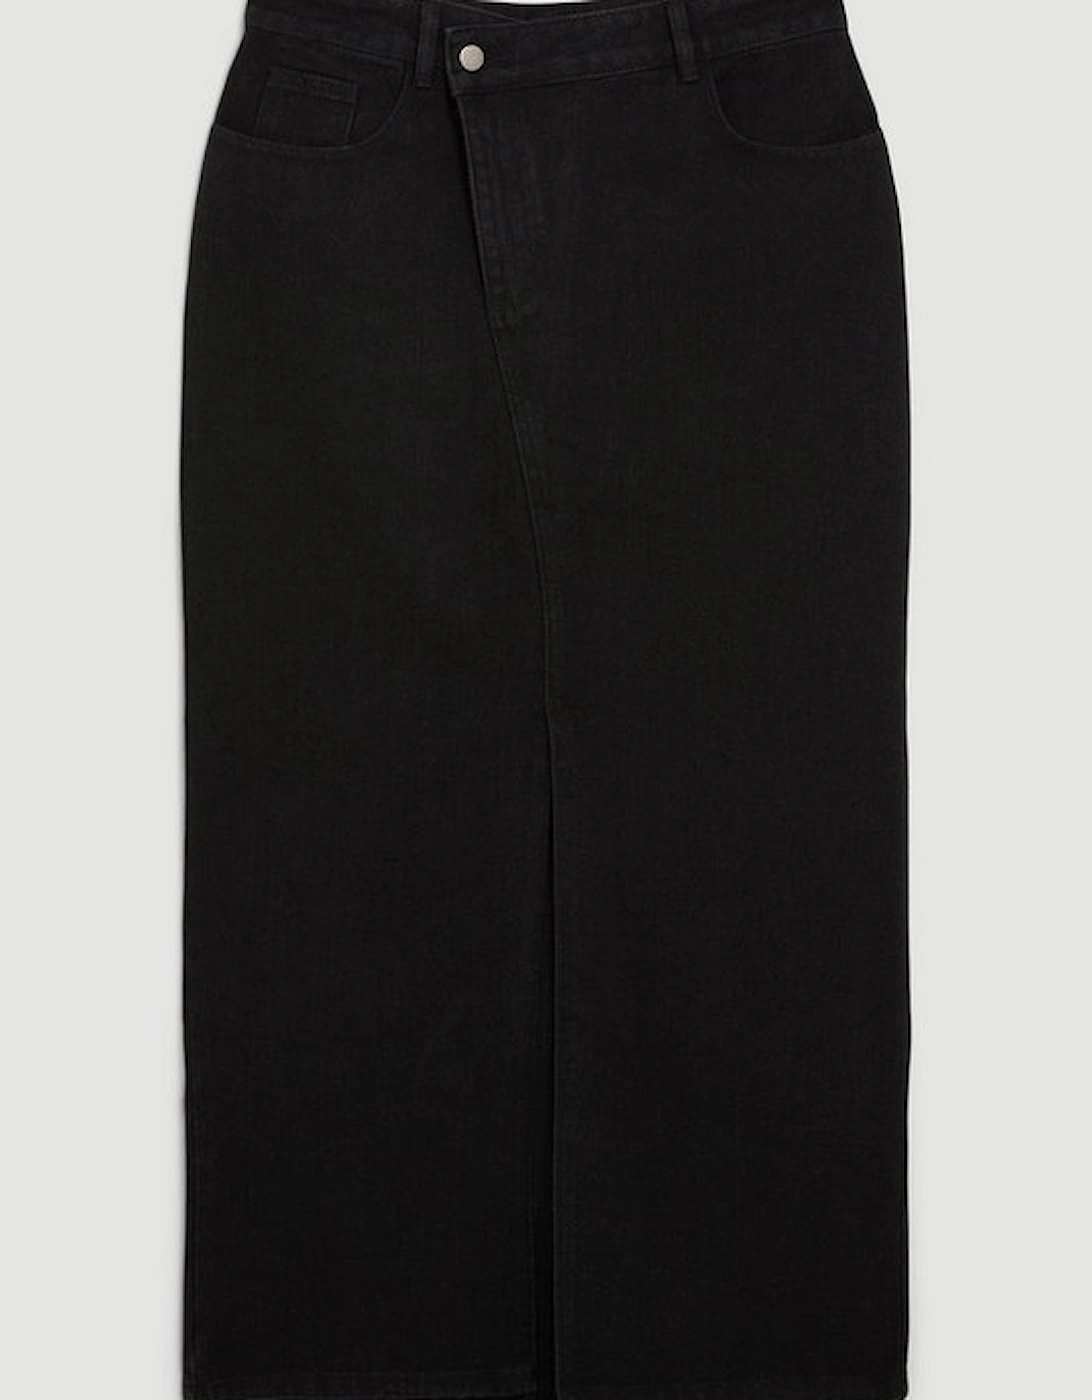 Denim Asymmetric Waistband Detail Maxi Skirt